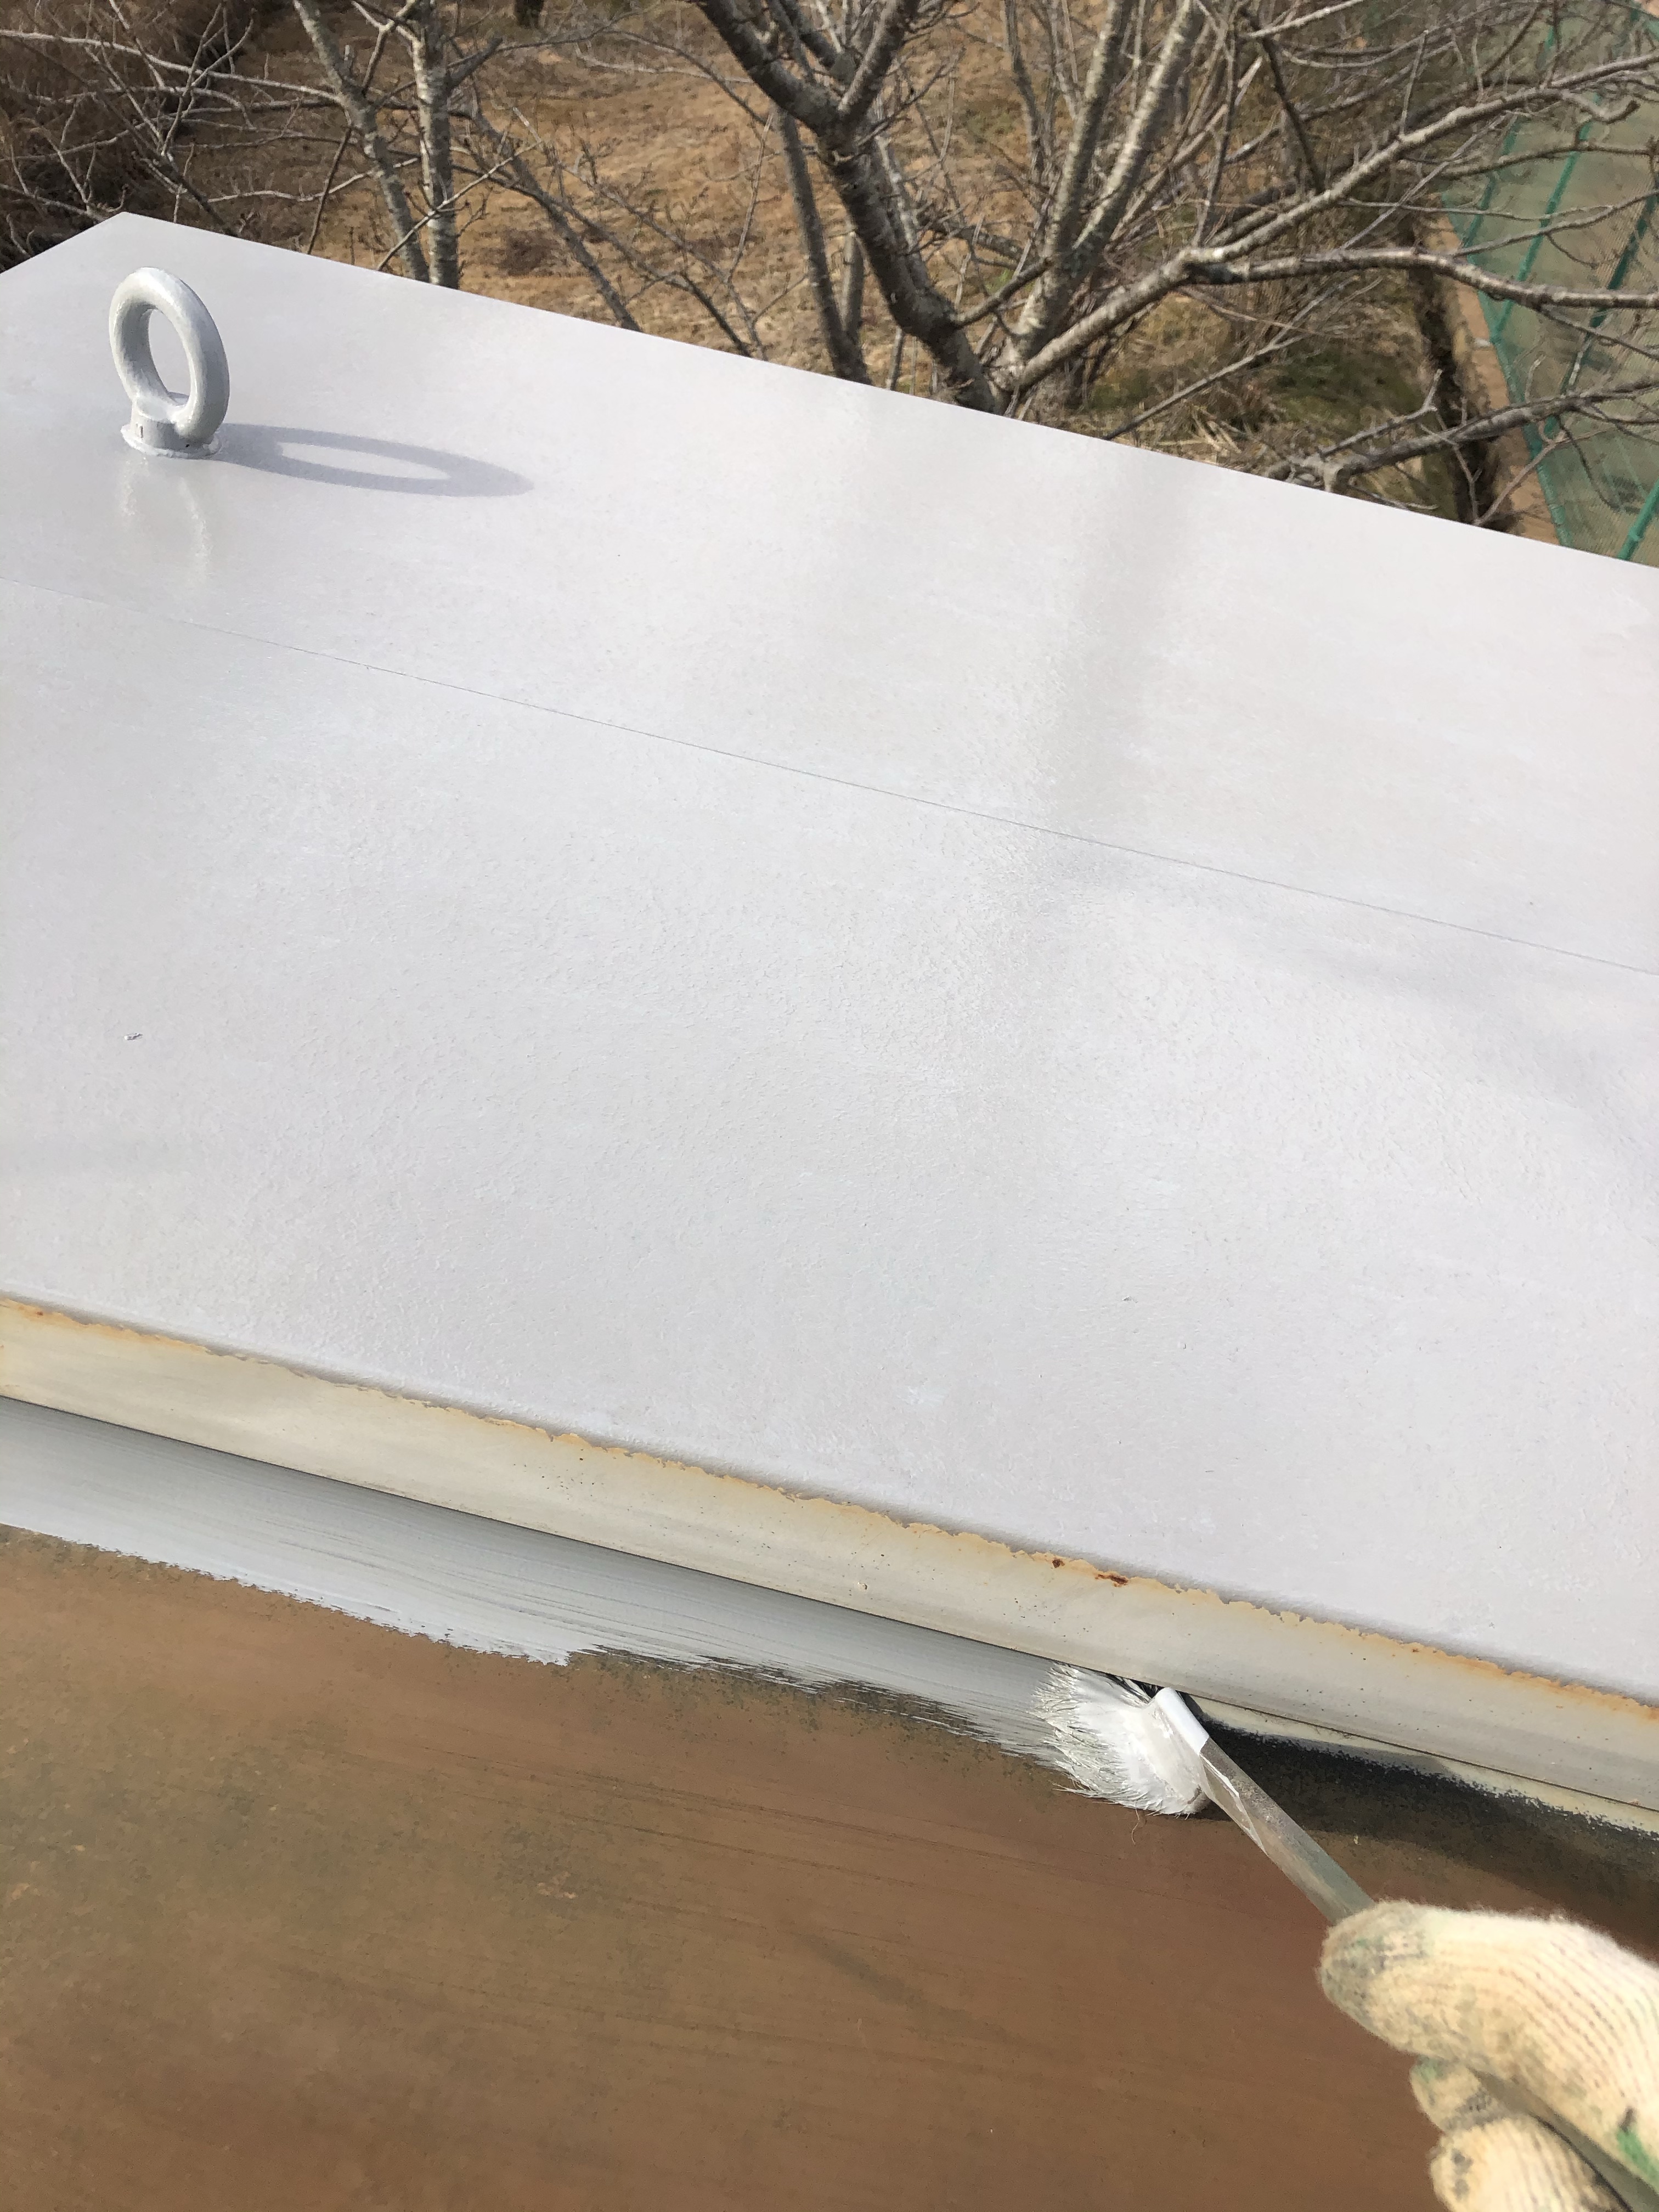 屋根の塗装